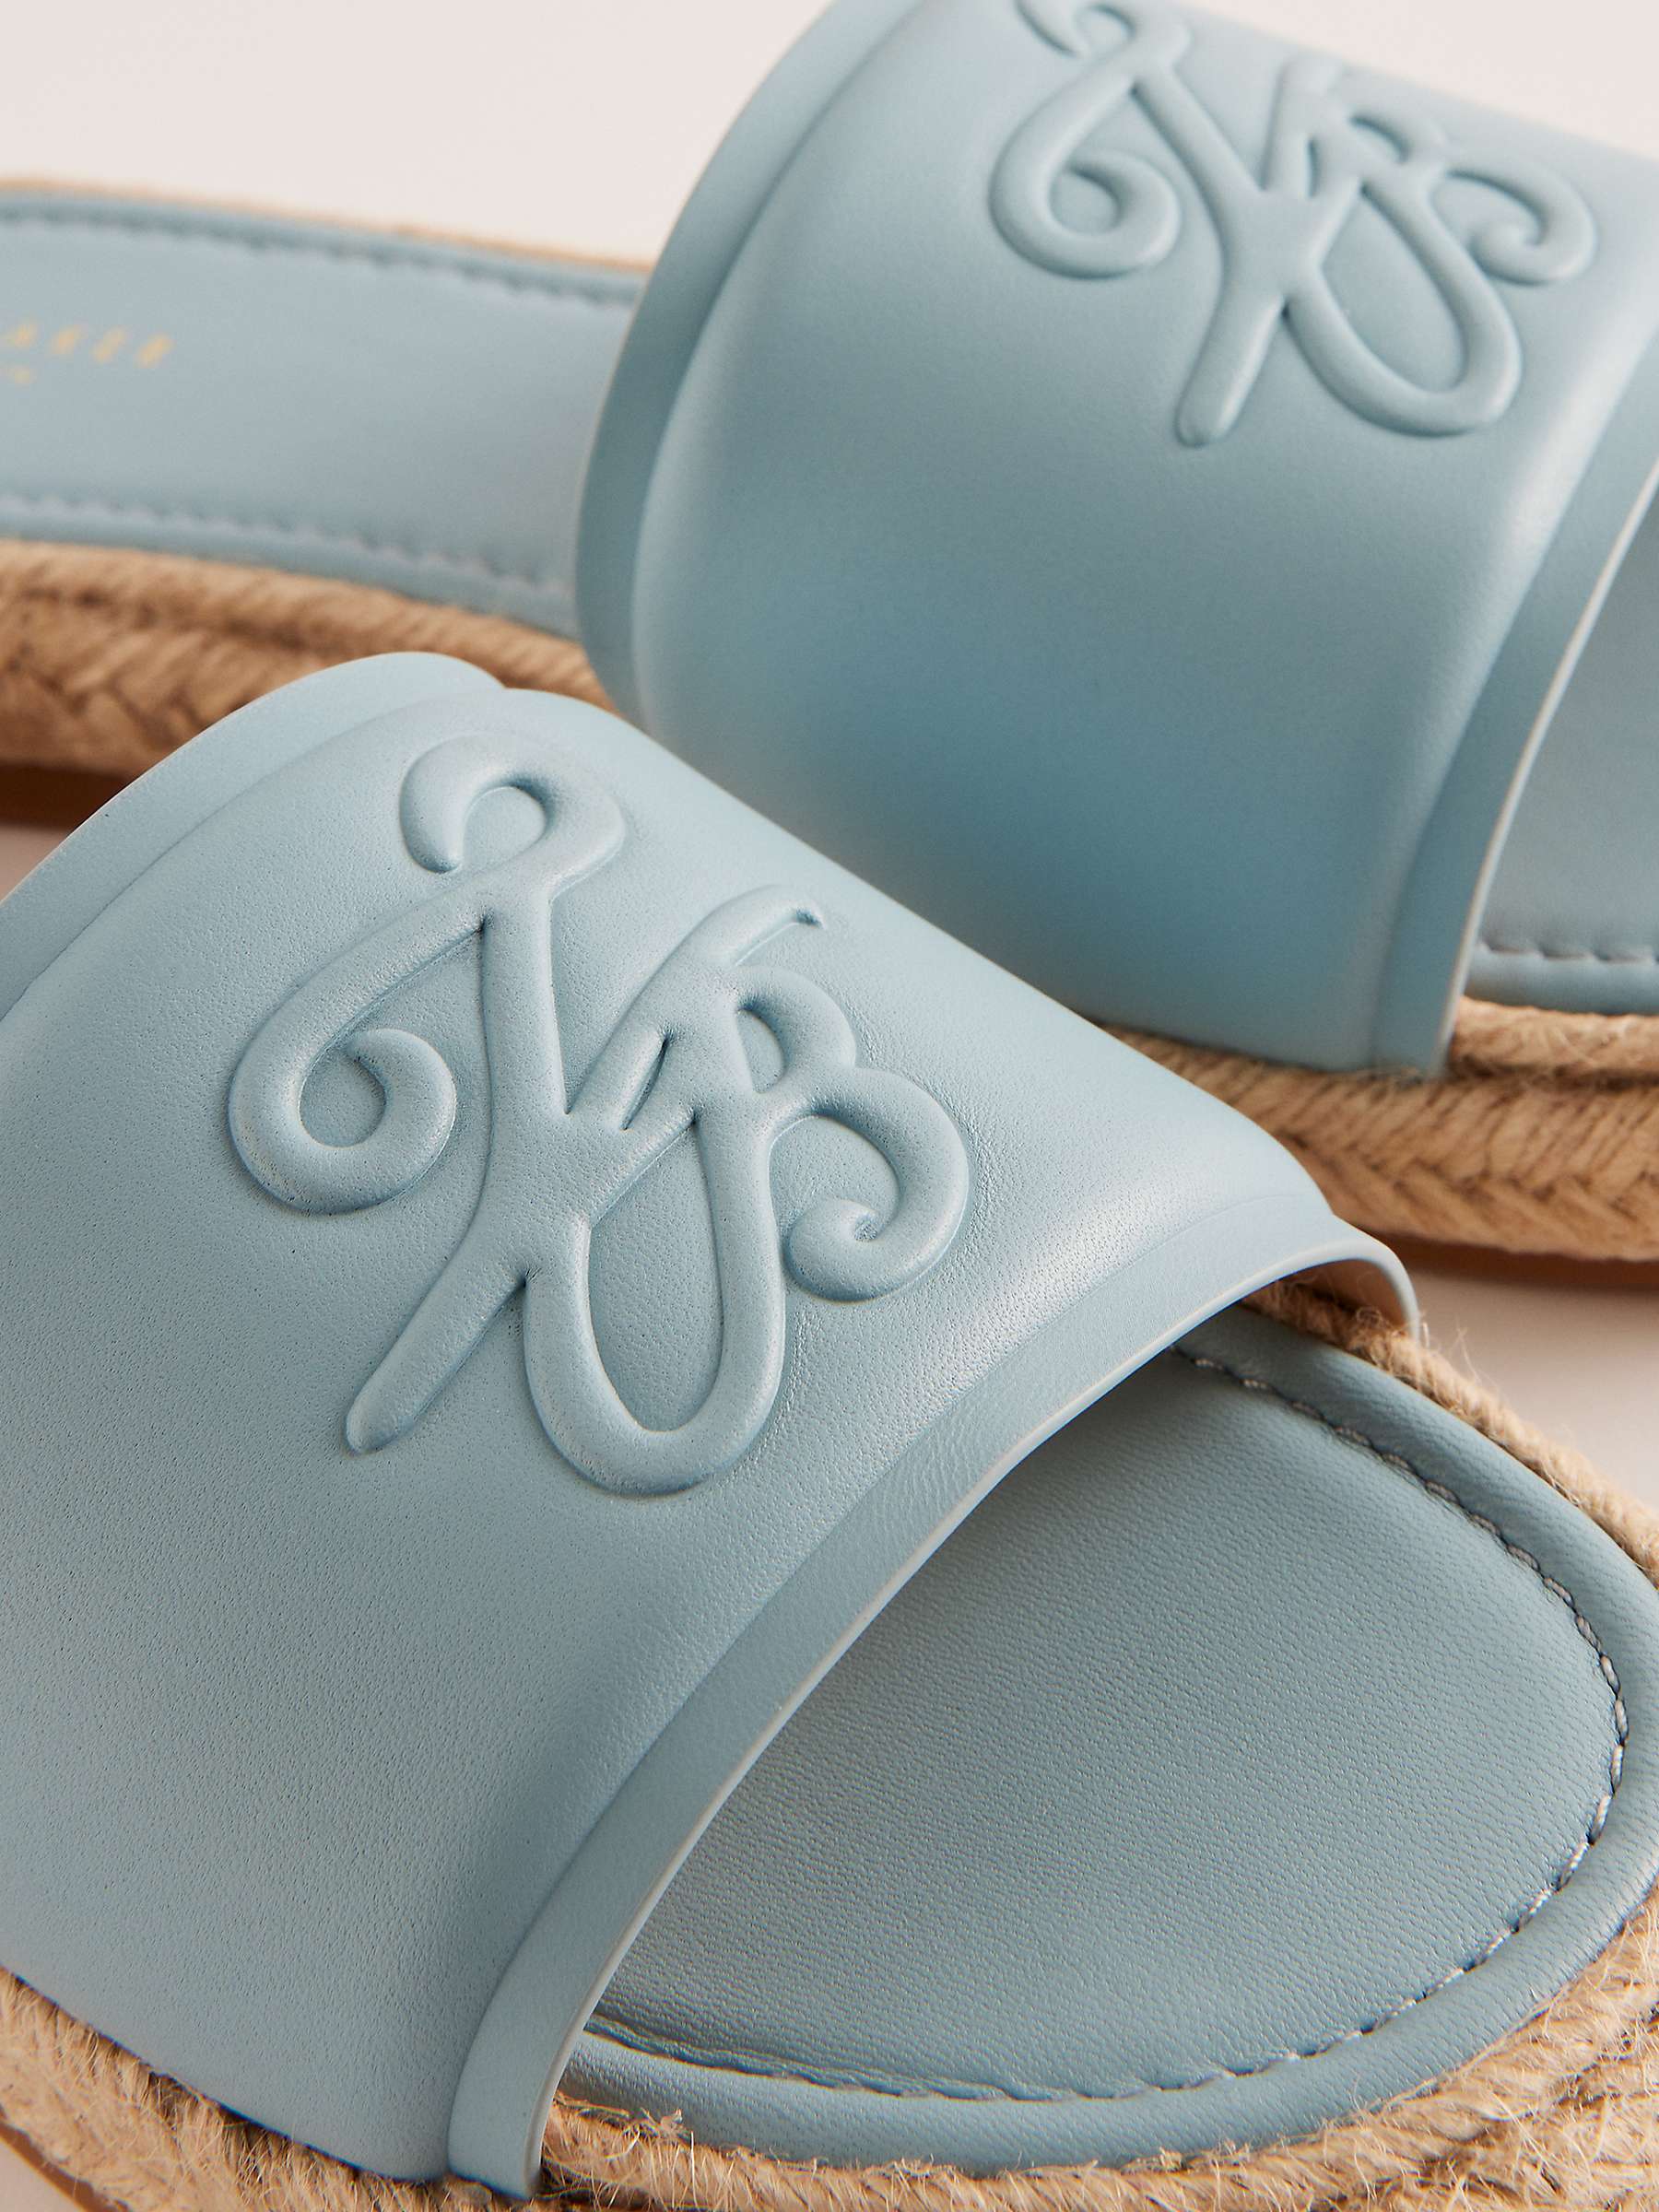 Buy Ted Baker Portiya Leather Espadrille Slider Sandals Online at johnlewis.com